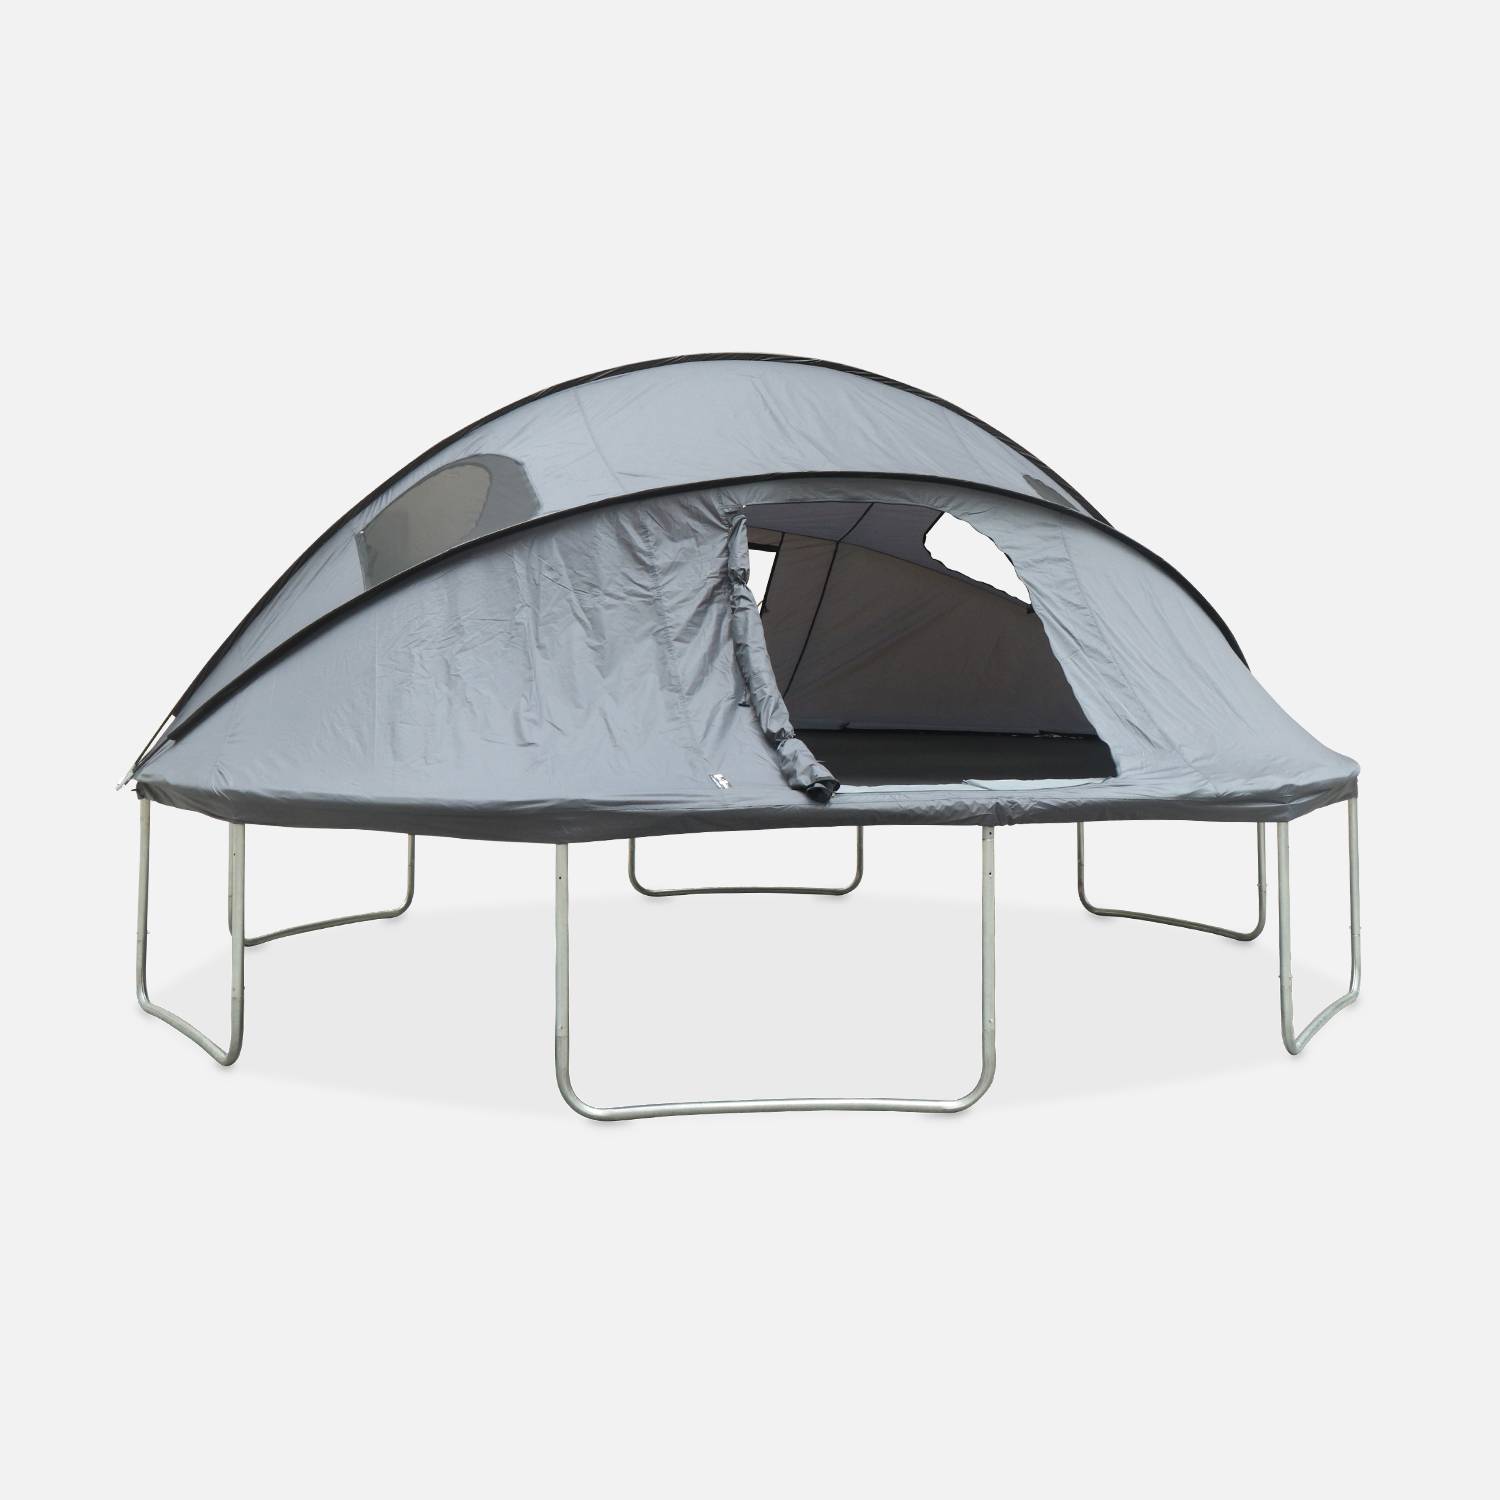 Tenda de campismo para trampolim Ø490cm (rede interior e exterior) em poliéster, com tratamento UV, 2 portas, 4 janelas e saco de transporte Photo2